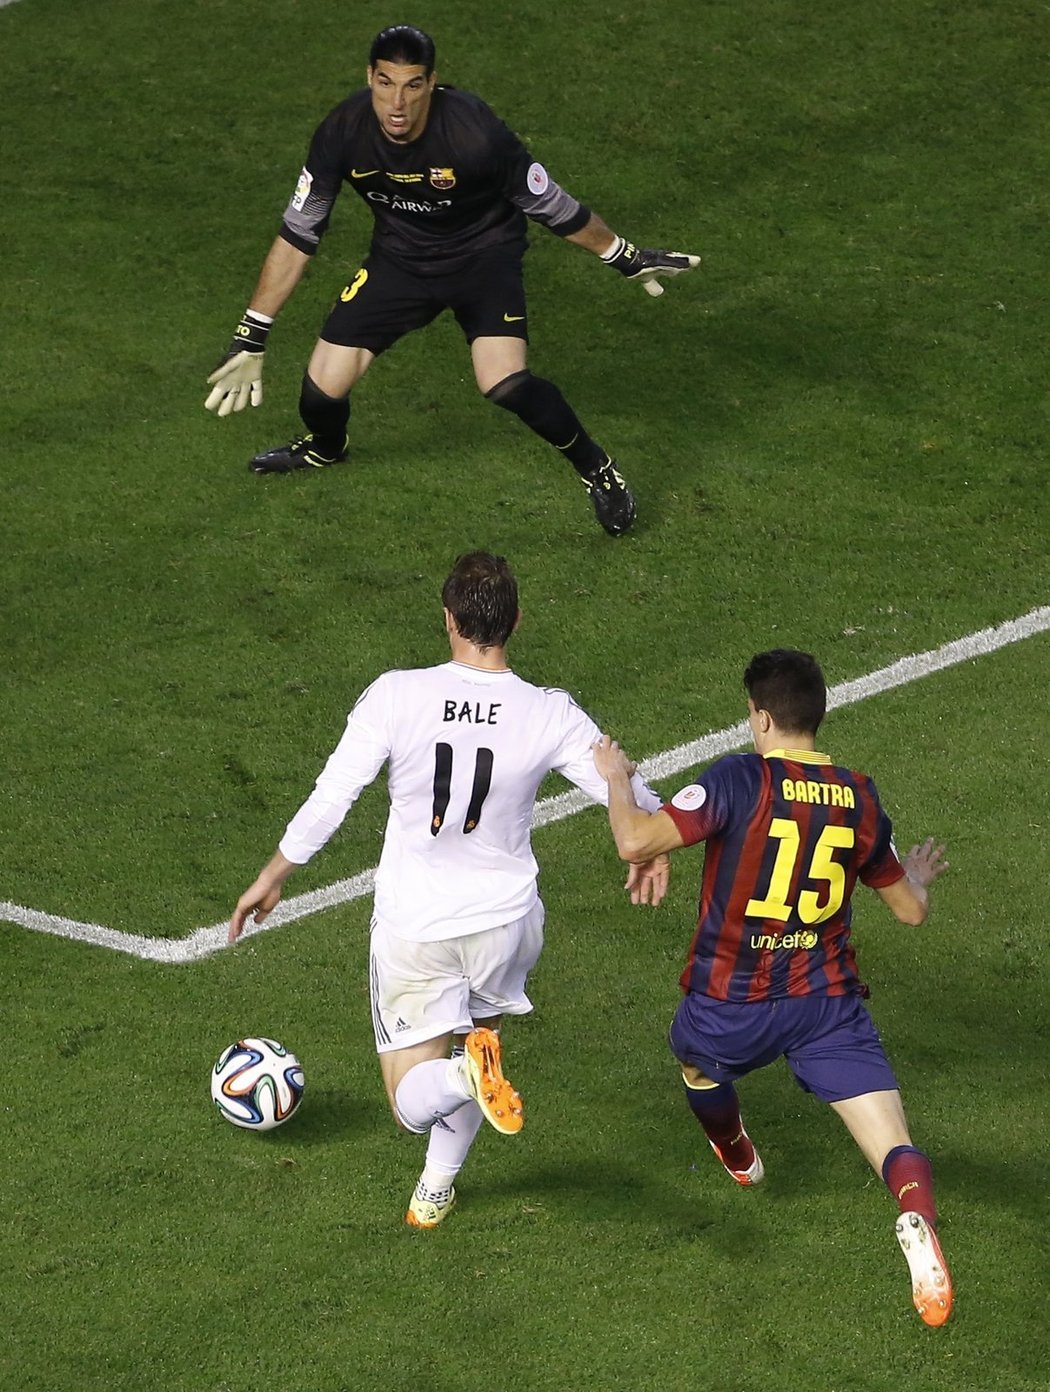 Gareth Bale ohromujícím sprintem unikl Bartrovi a gólem rozhodl o výhře Realu nad Barcelonou ve finále Španělského poháru